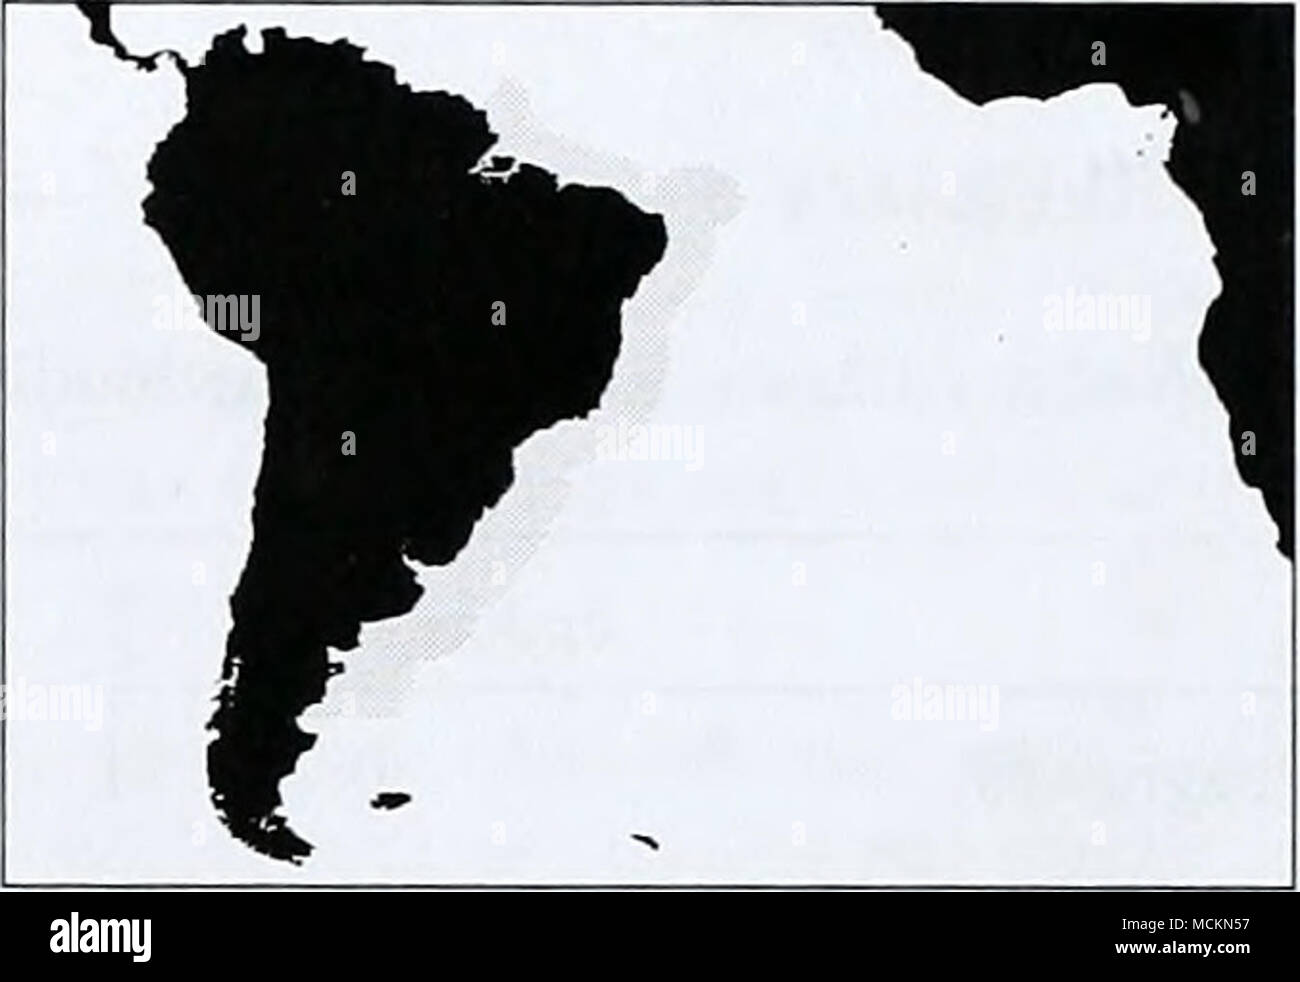 . Brasilien aktuelle Brasilien Aktuelle LME läuft von Recife in Brasilien südwärts bis zur Mündung des Rio de la Plata, in der südlichen Hälfte der brasilianischen Küste und der Atlantischen Küste von Uruguay. Der nördliche Teil dieses LME hat eine sehr schmale steil abfallenden Regal, von 15-75 km breit; im südlichen Teil dieses wird breiter und schonender zu erreichen, 150 km oder so. Die dominierende ozeanographische Feature ist die nach Süden fließende Brasilien Aktuelle, die bei etwa 10°S beginnt und am stärksten ist von der Abrolhos Archipel südlich des Wendekreis des Steinbocks, nach denen es Beco Stockfoto